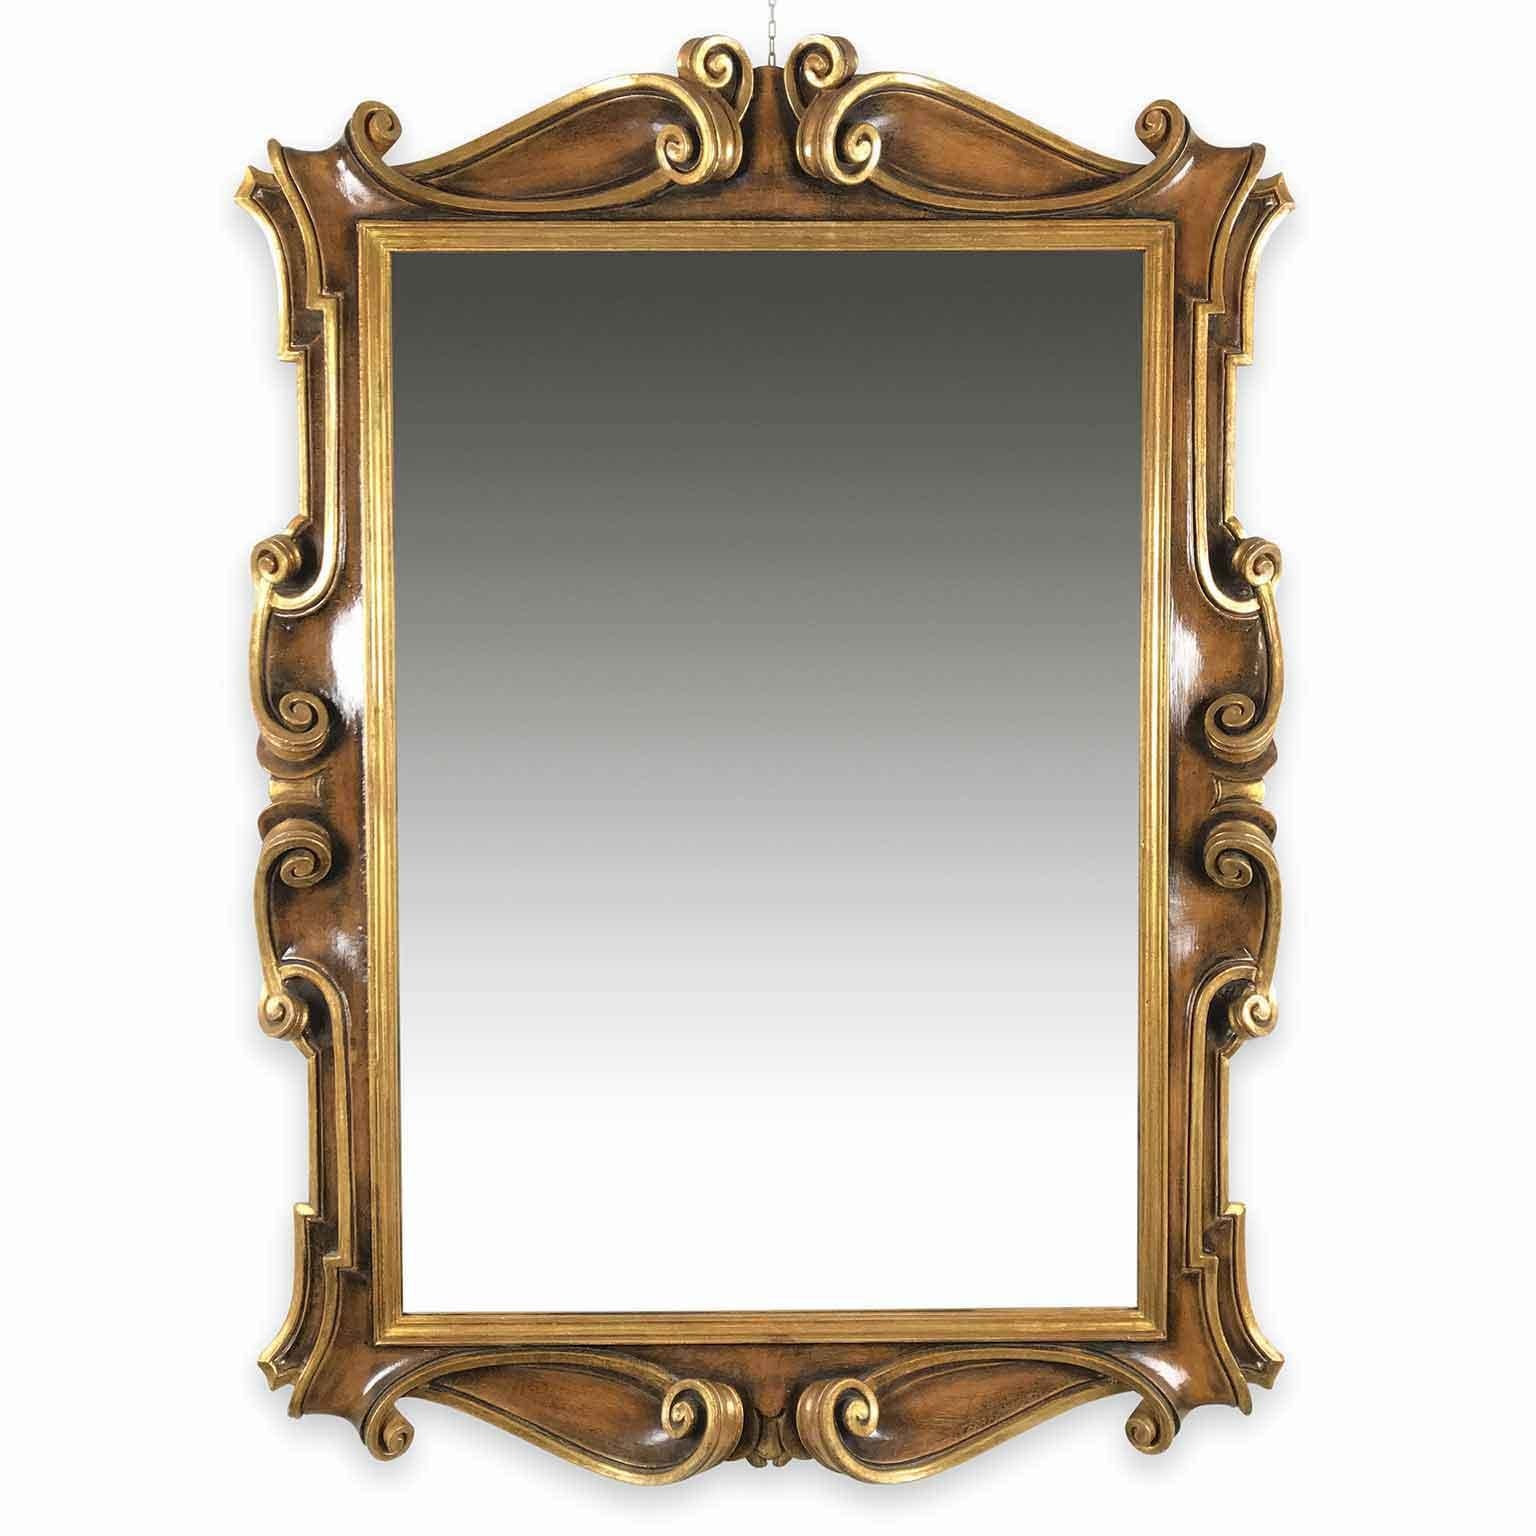 Specchio fiorentino sagomato in legno laccato color noce e dettagli dorati, in buono stato di conservazione. Di forma rettangolare con modanature  in legno intagliato a volute, riccioli profondi, questo specchio italiano è laccato  e parzialmente